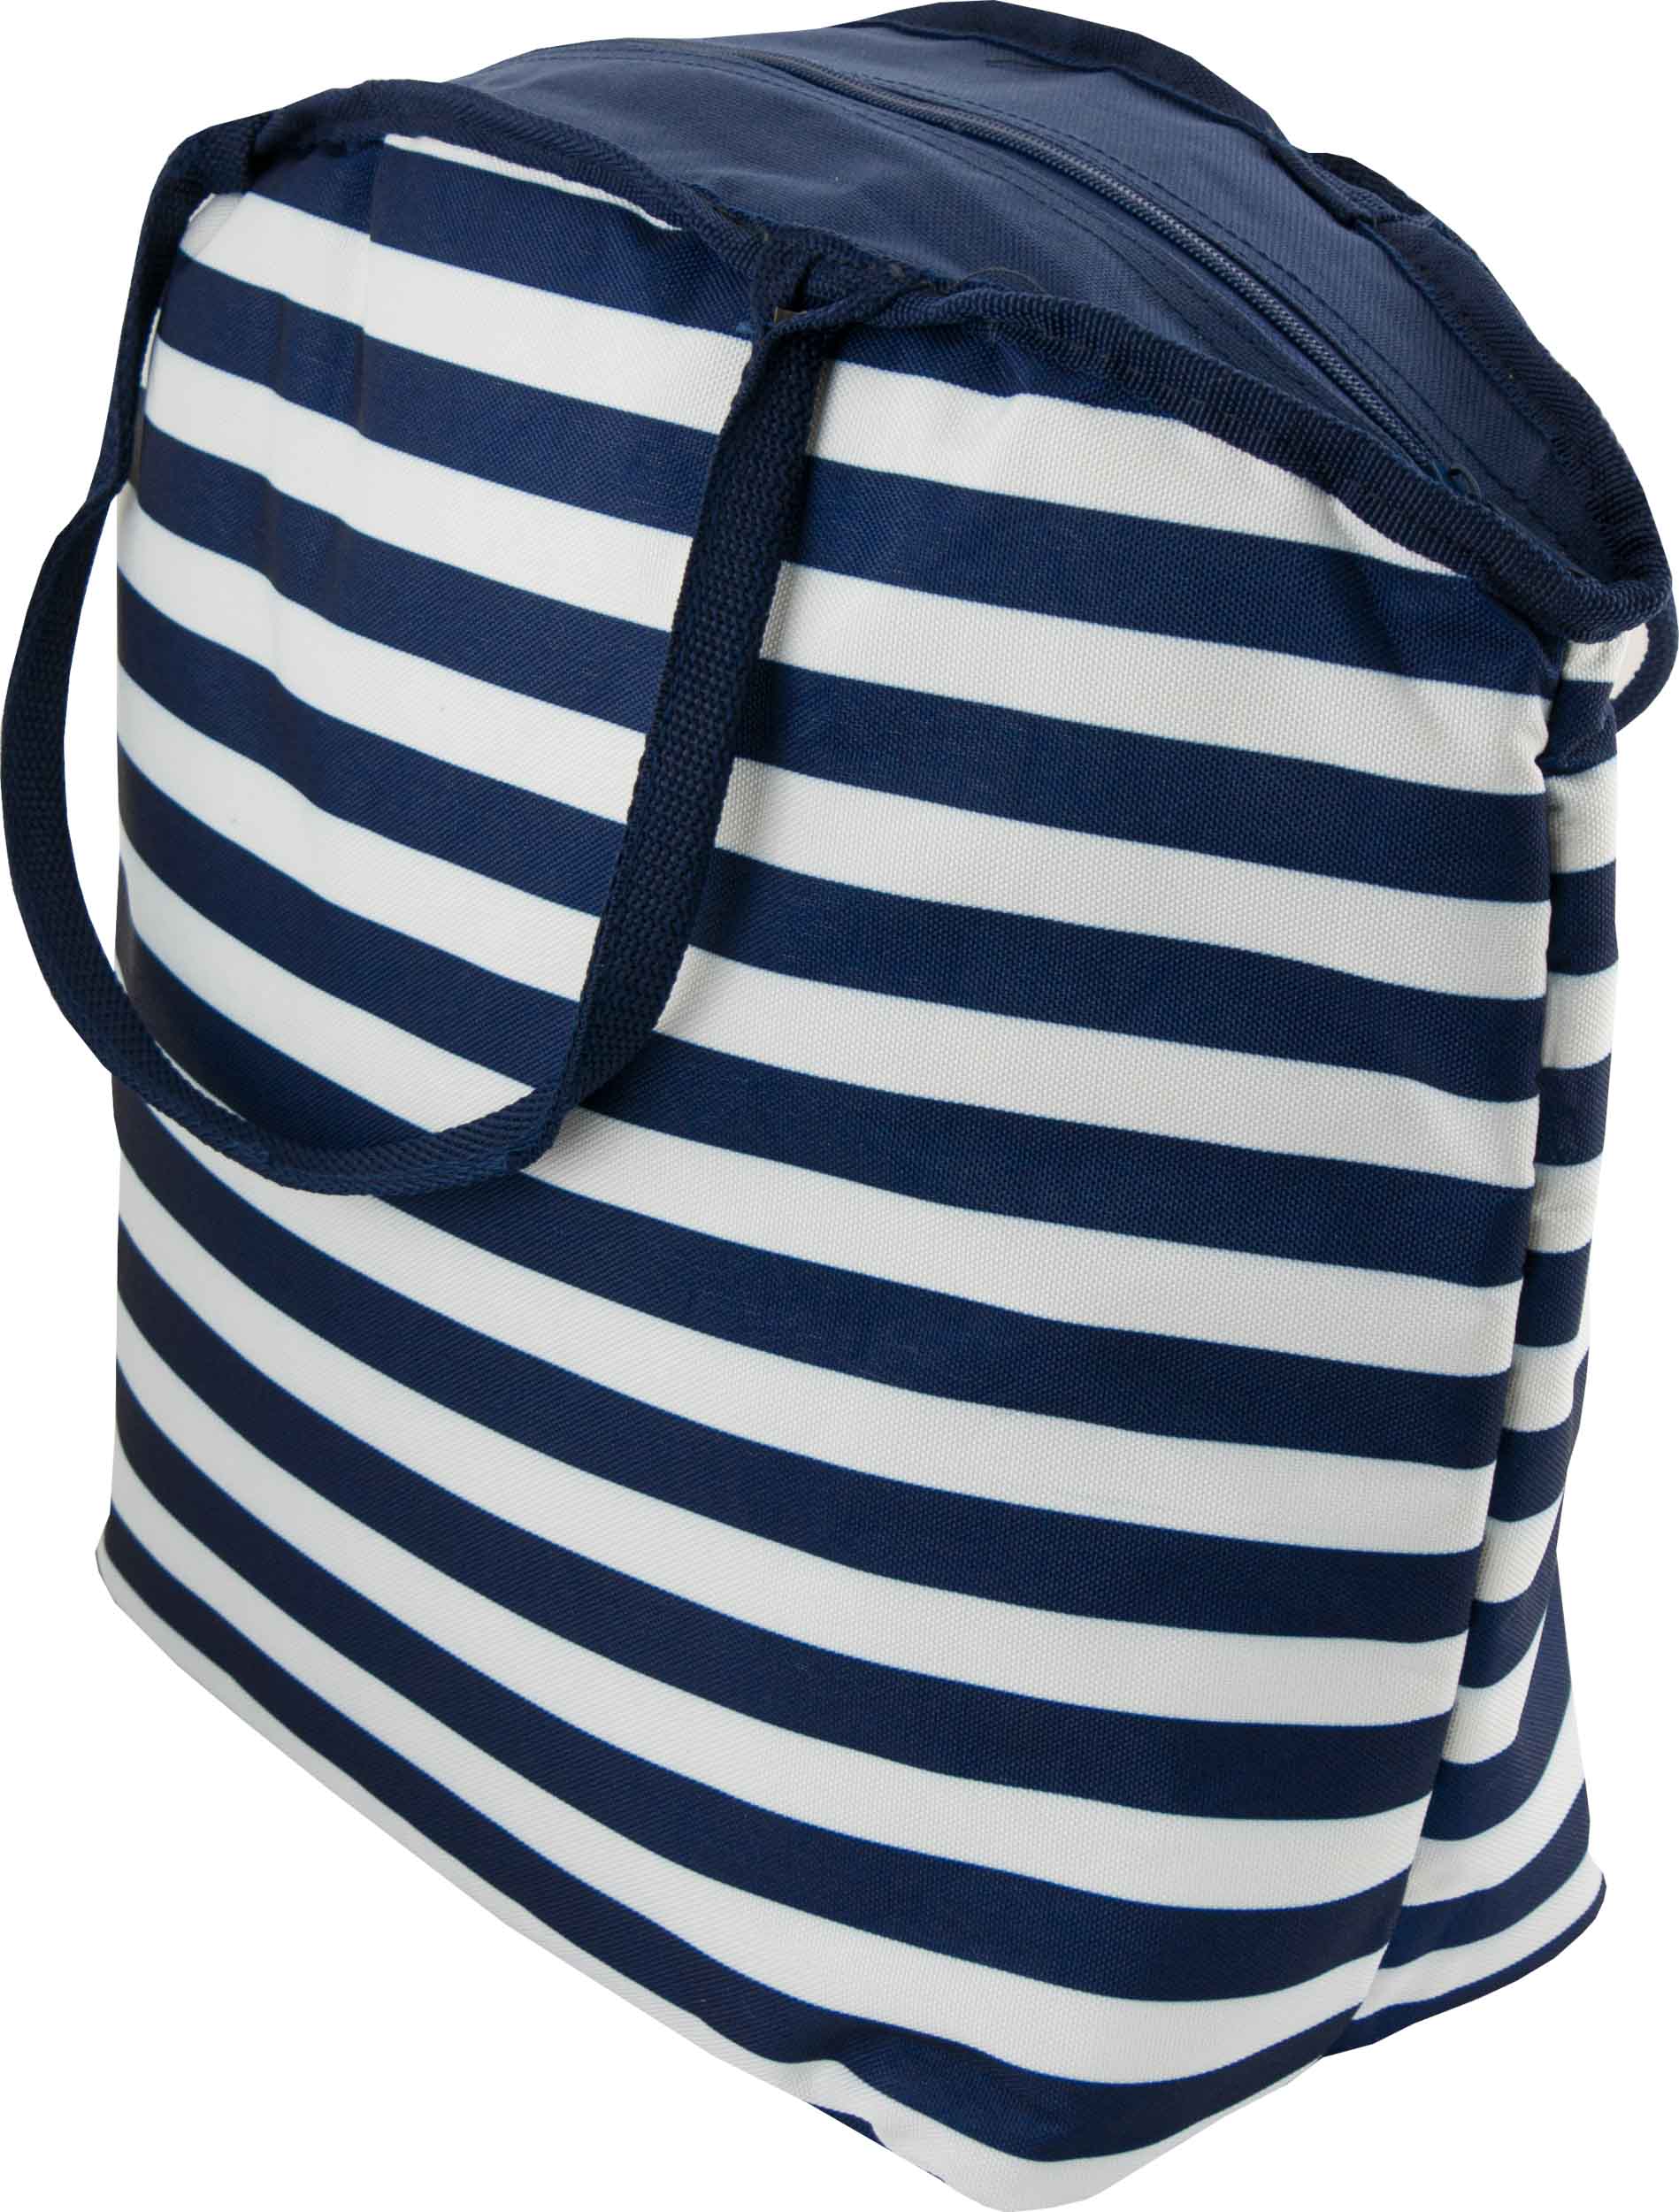 Plážová chladící taška Beach Cooling Bag 20L blue-white